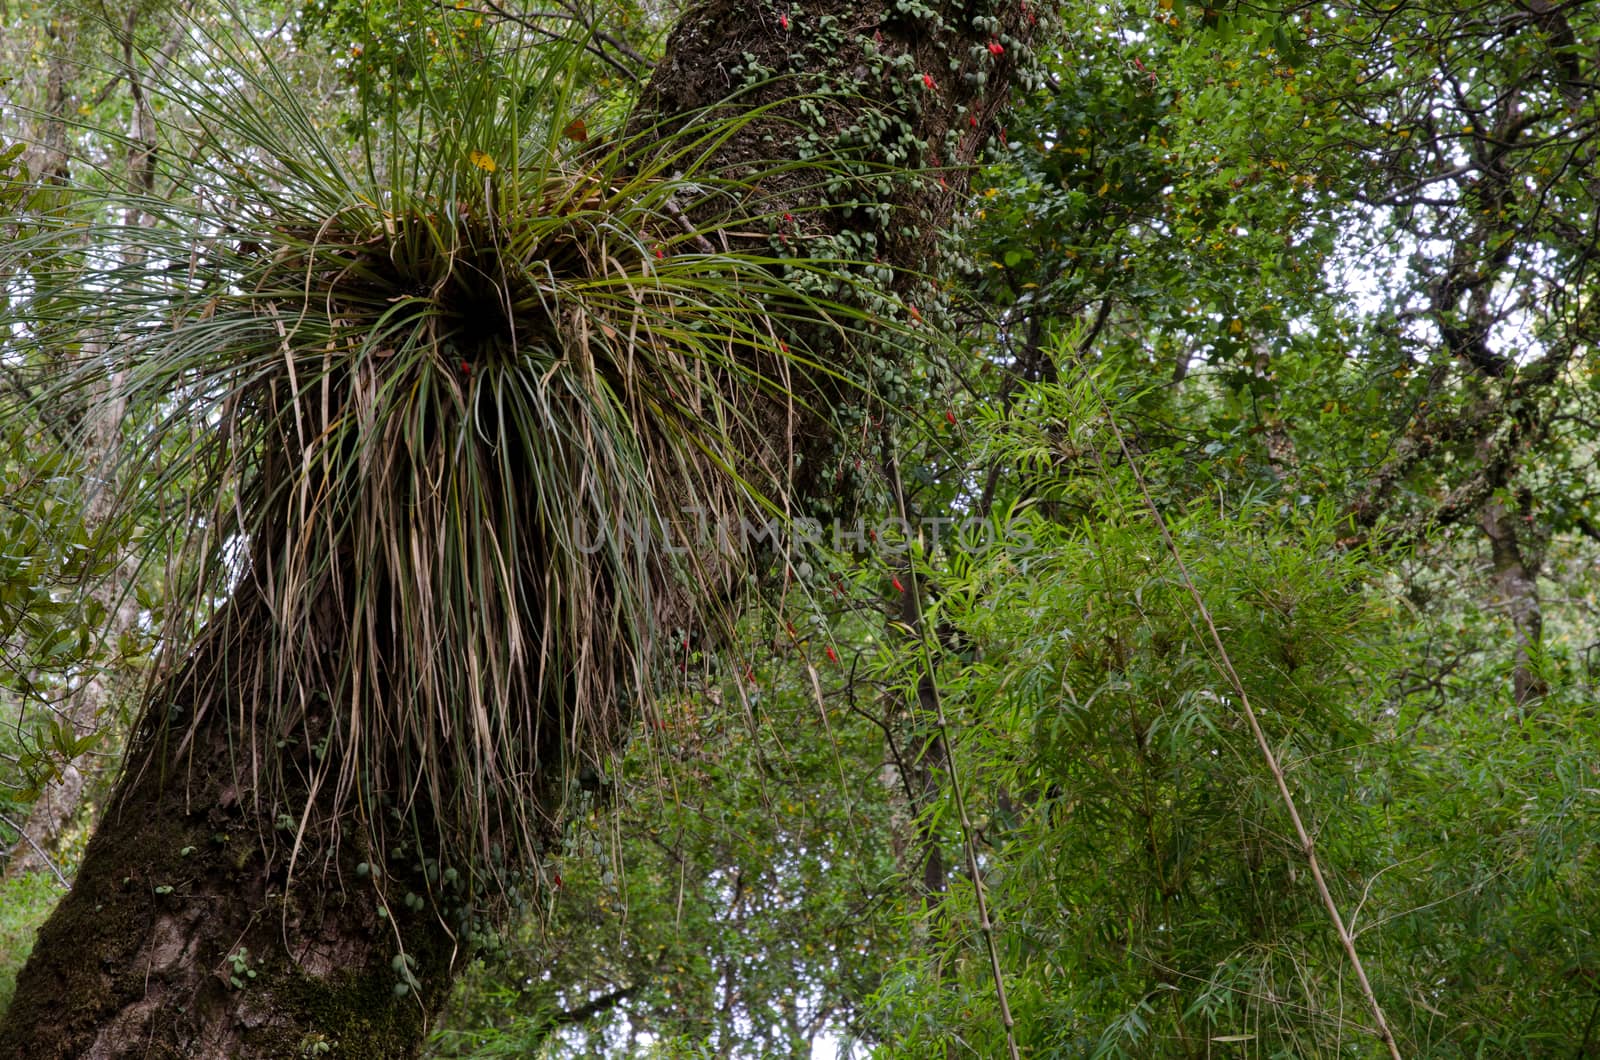 Chupalla Fascicularia bicolor on a tree in the Cerro Nielol Natural Monument. by VictorSuarez